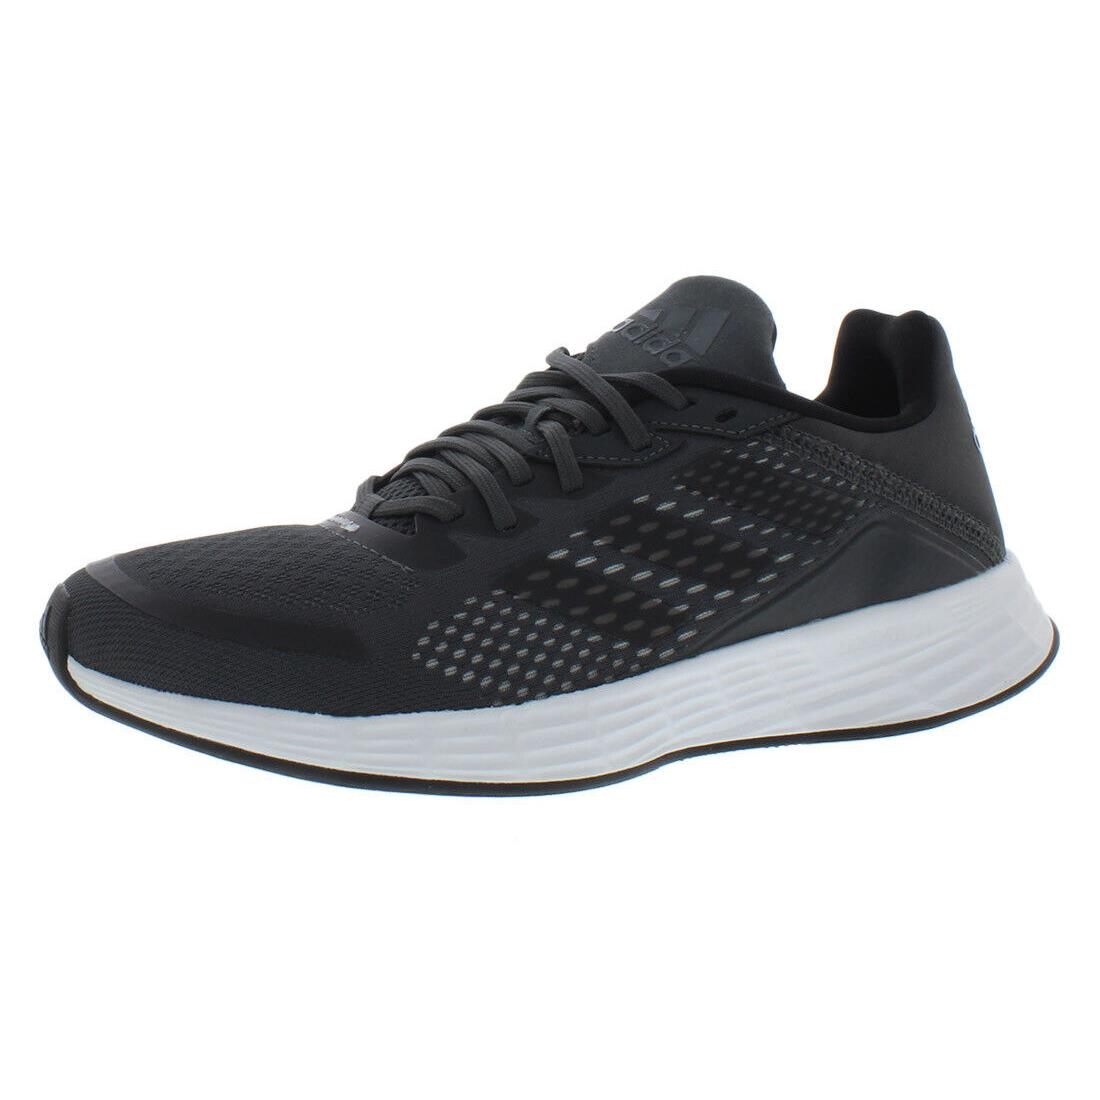 Adidas Duramo Sl Mens Shoes Size 6 Color: Grey/grey/grey